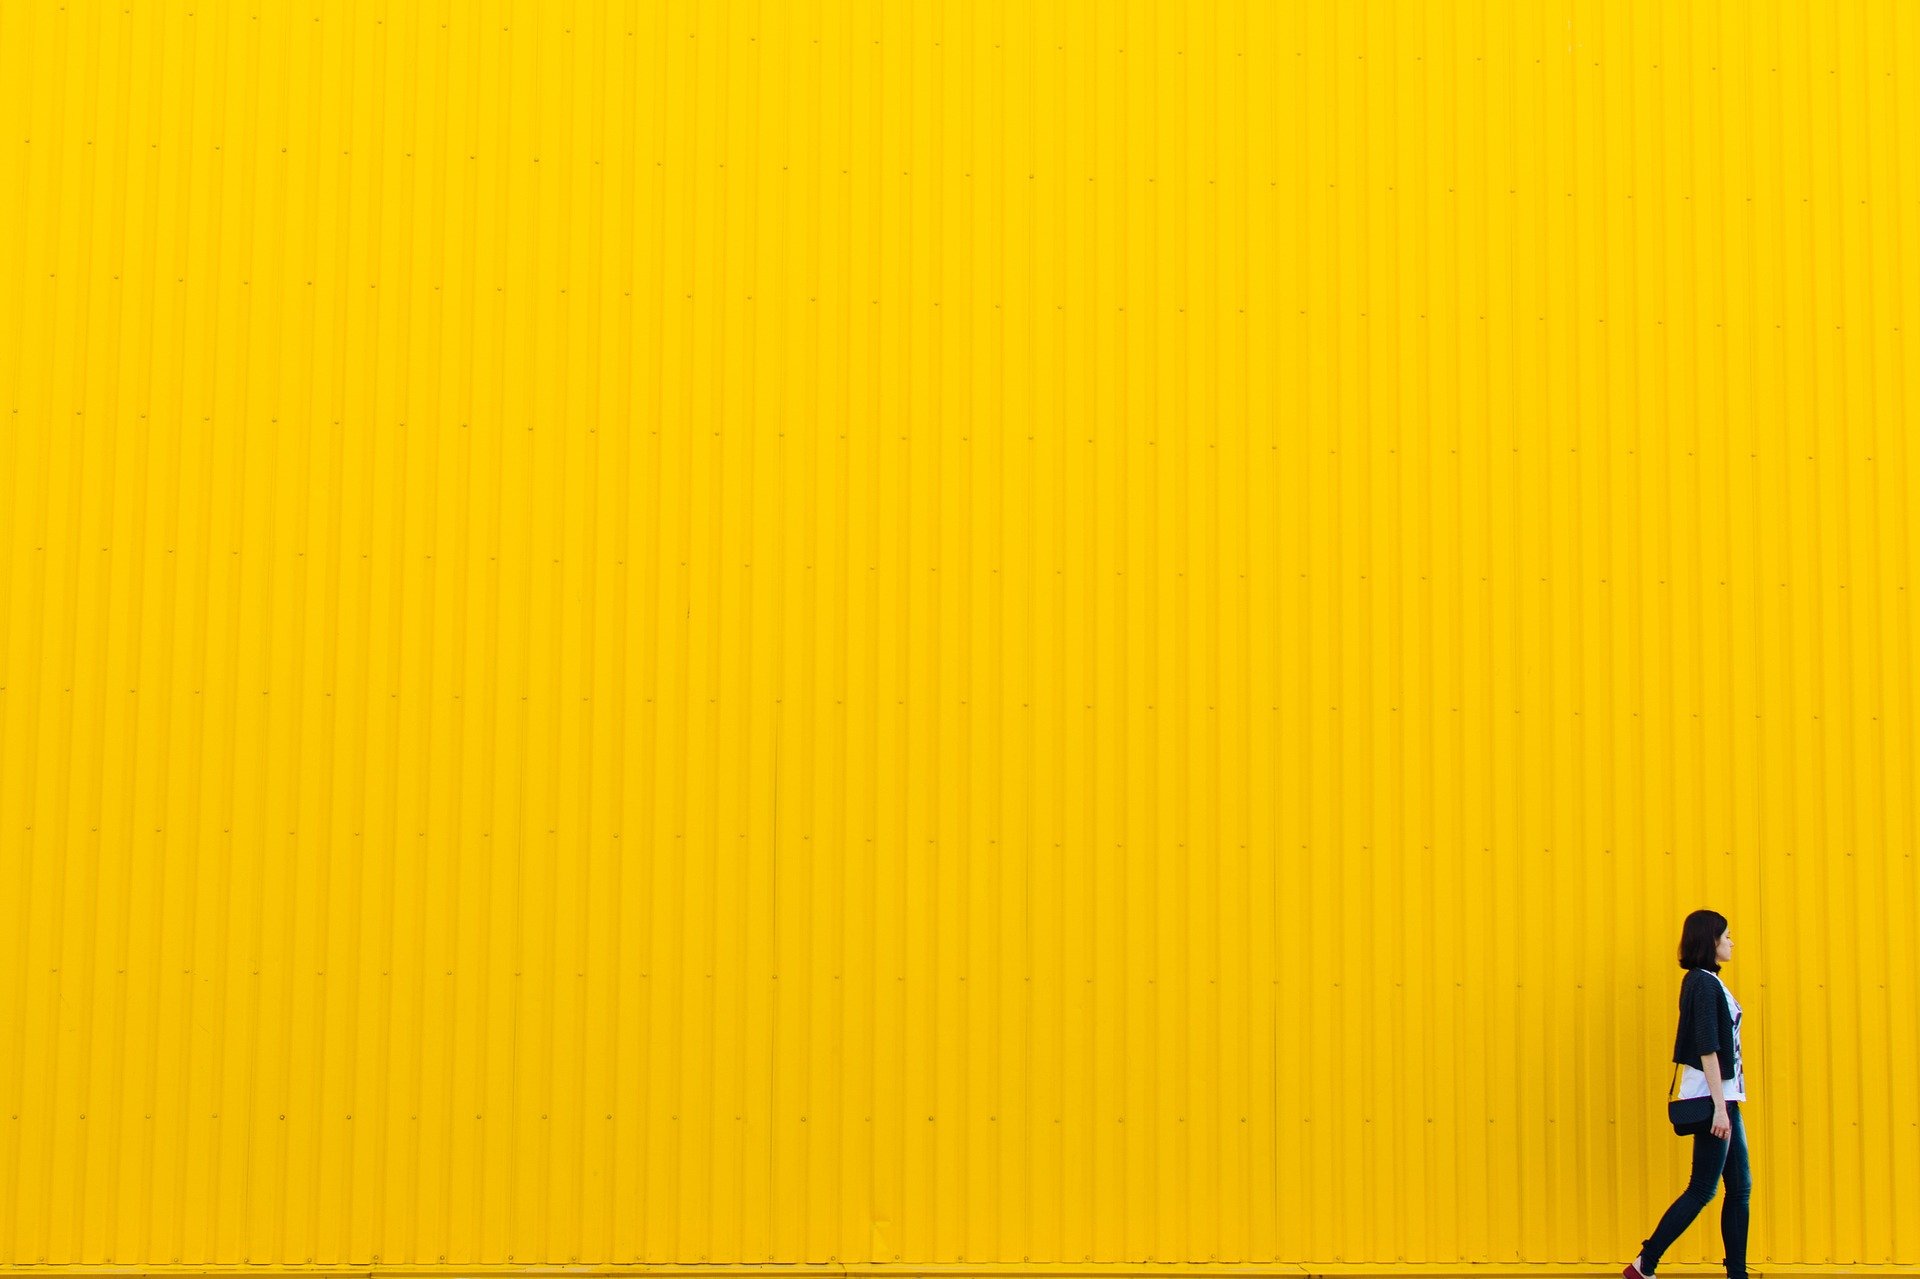 quiz z hiszpańskiego colores kolory test wiedzy łatwy amarillo żółty